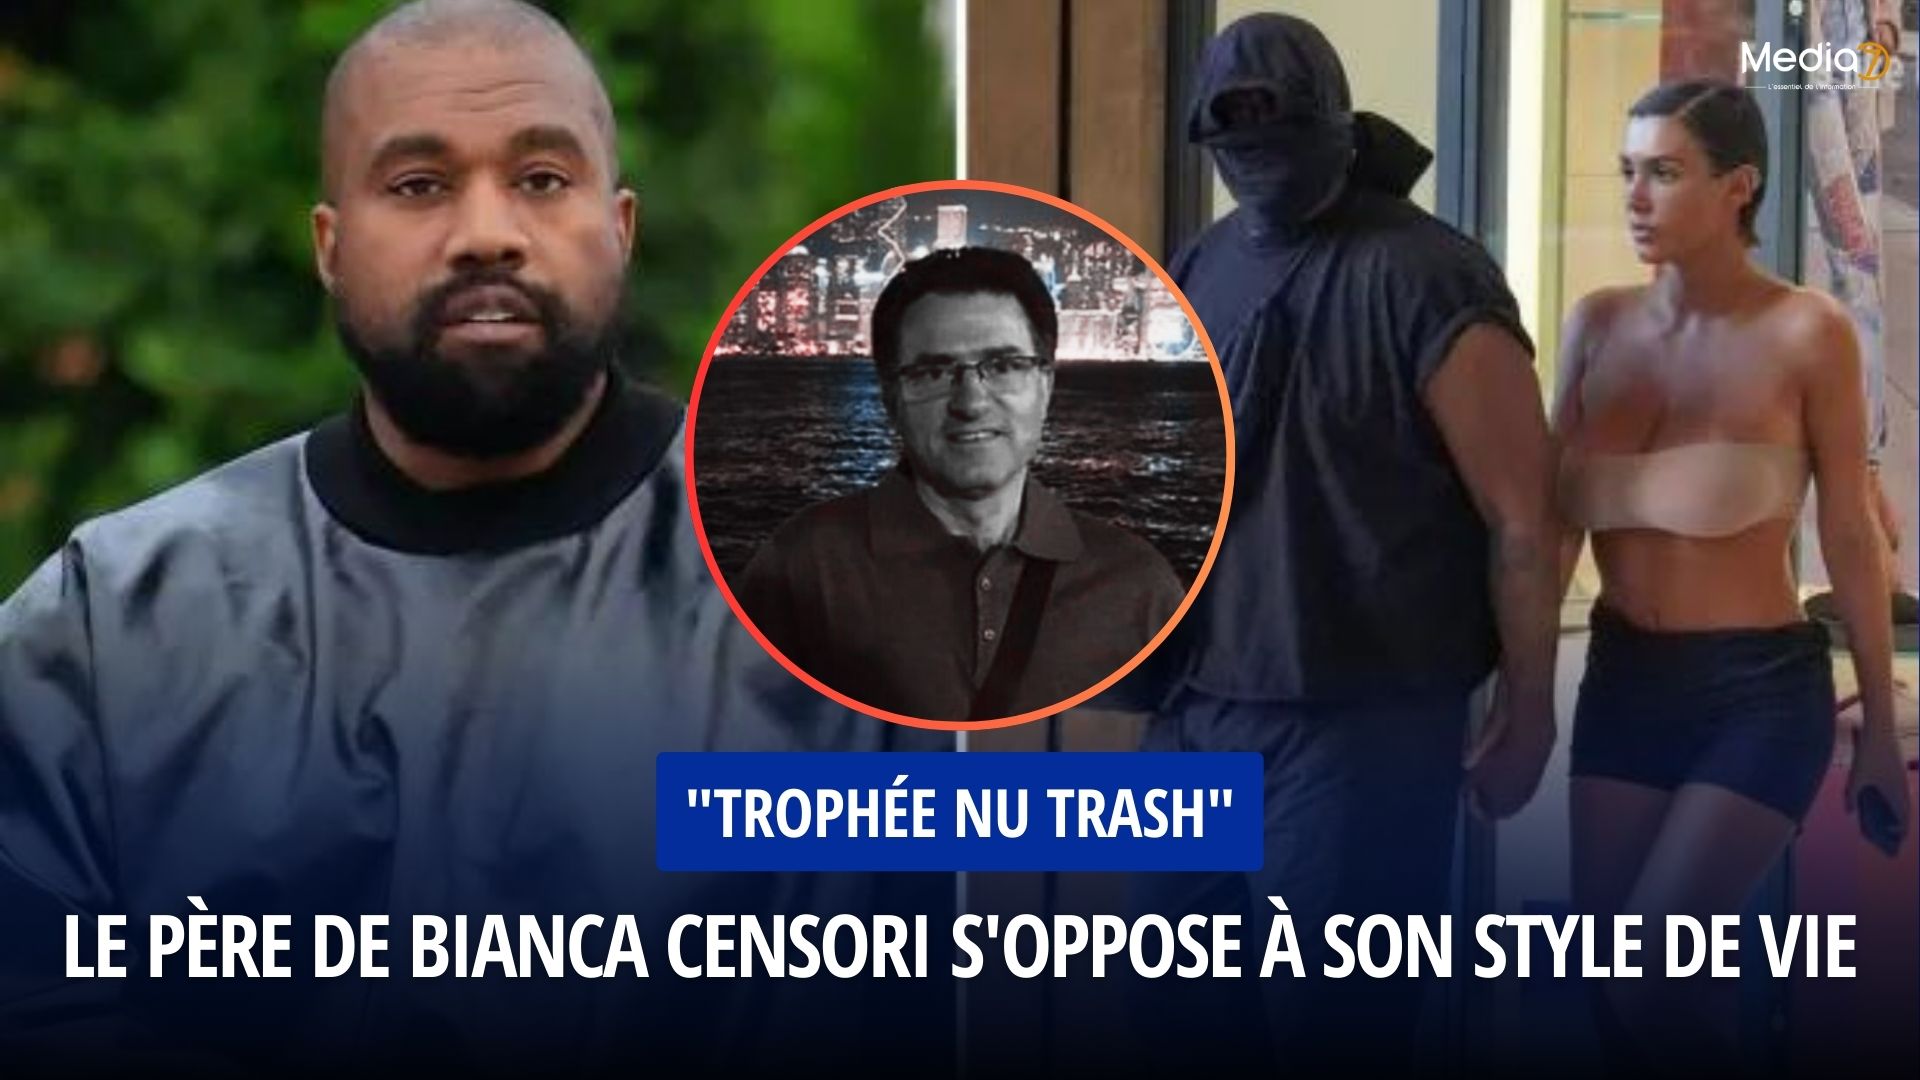 Bianca Censori qualifiée de "trophée nu trash" par son propre père